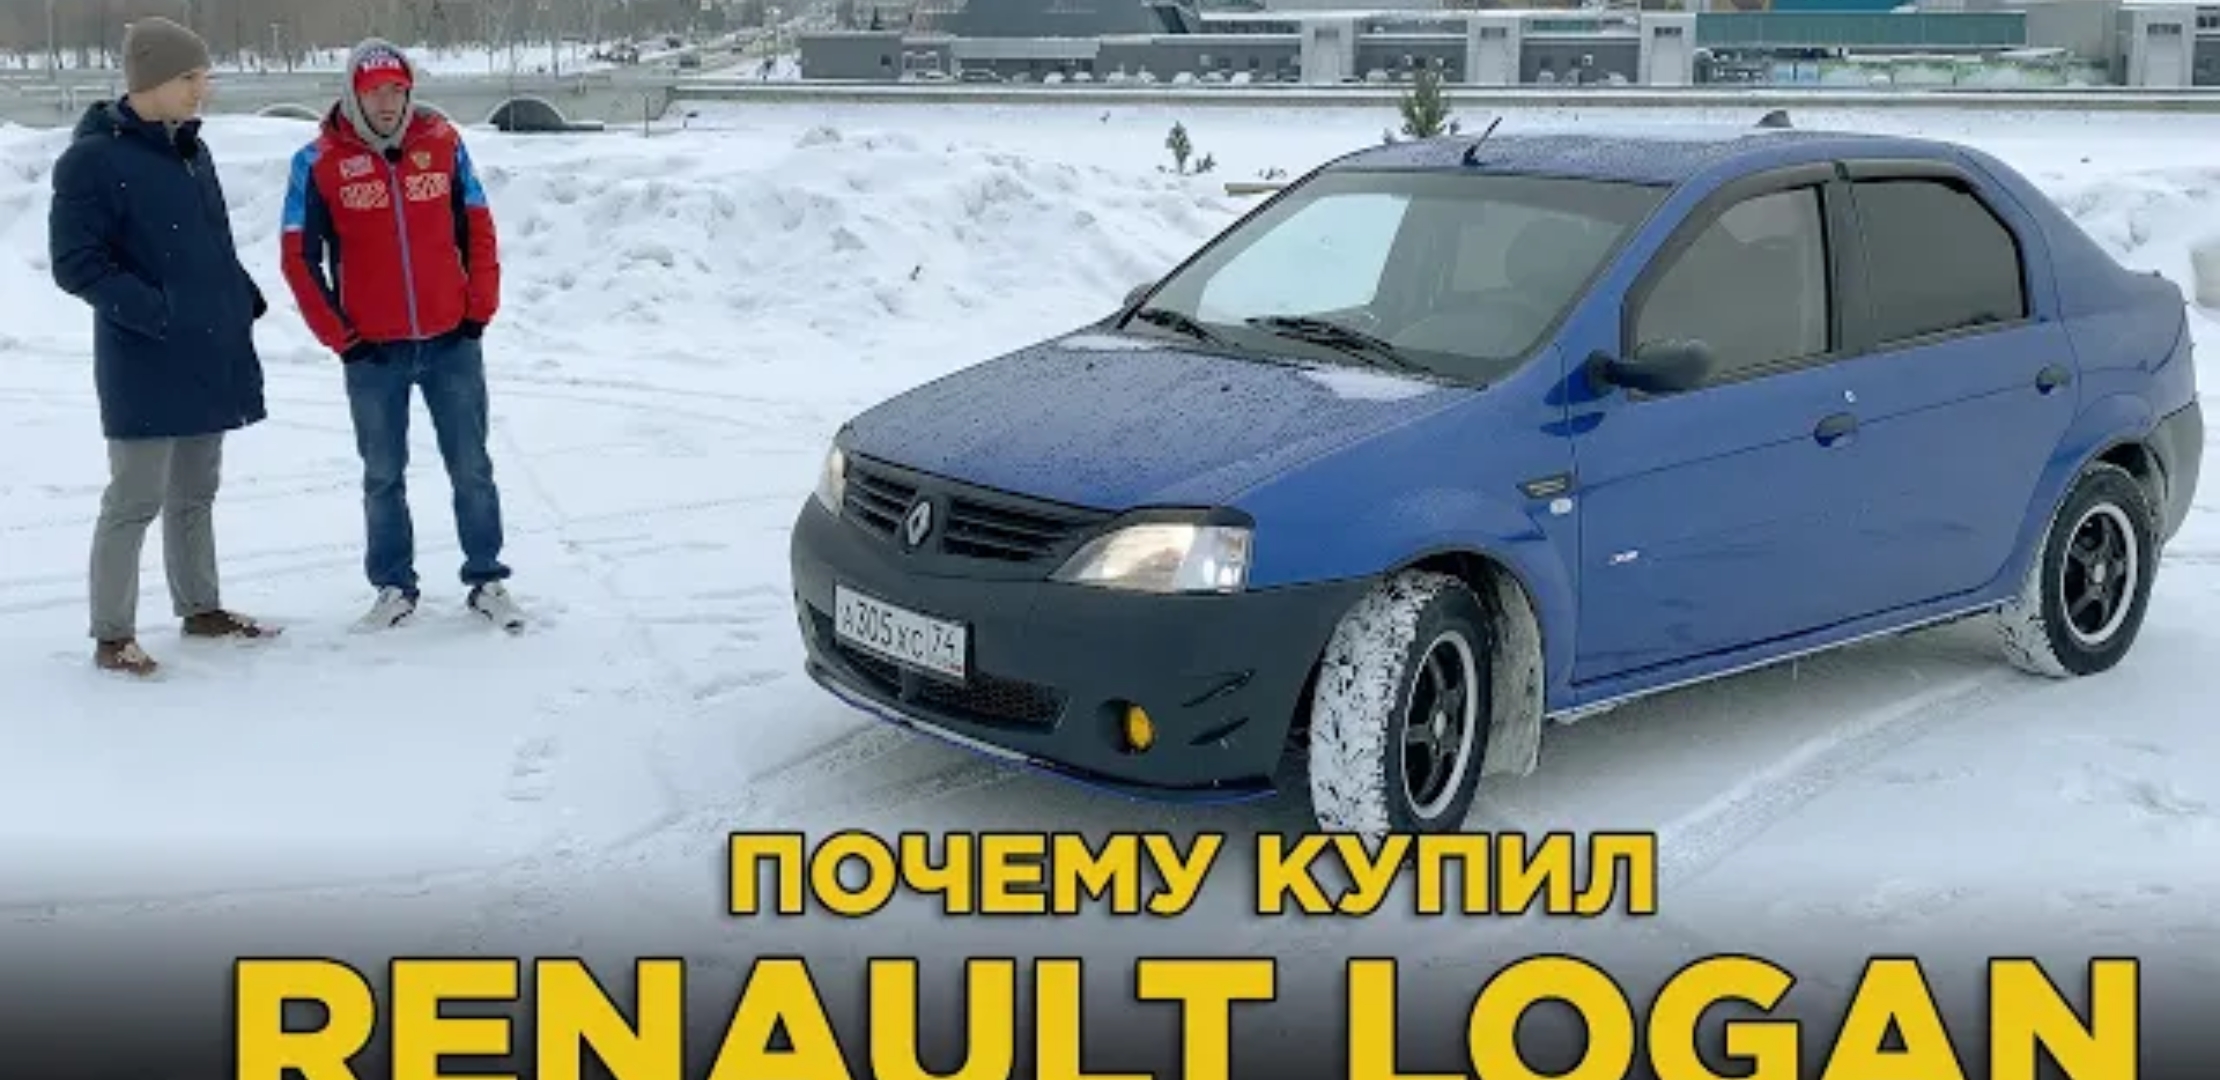 Анонс видео-теста Почему купил Renault Logan 2006 | Или почему не продал? Отзыв фаната Рено Логан. Колхозный тюнинг?